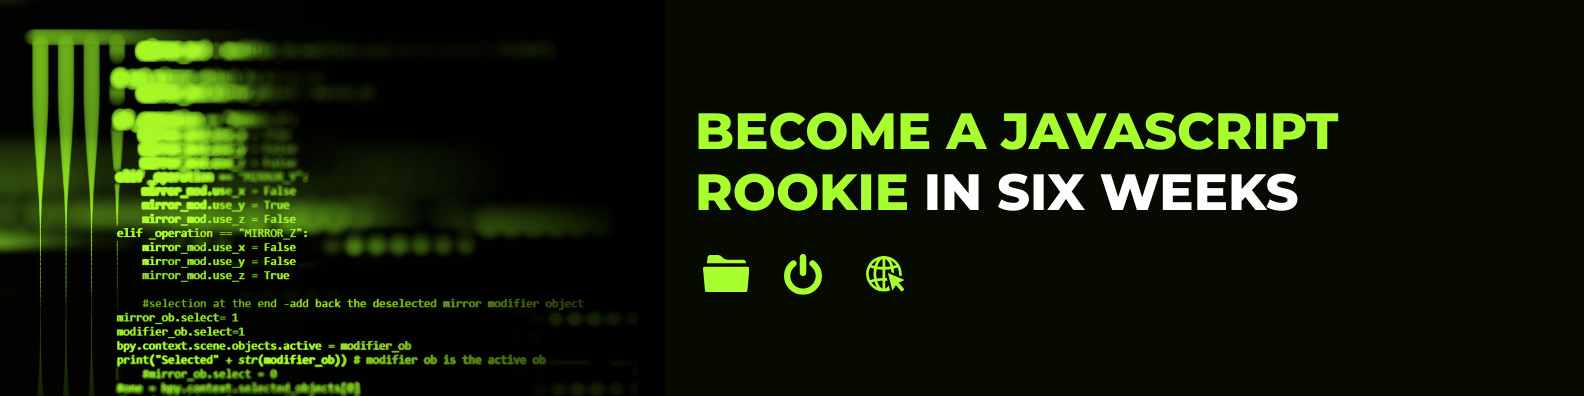 Become a Javascript Rookie Linkedin Profile BG